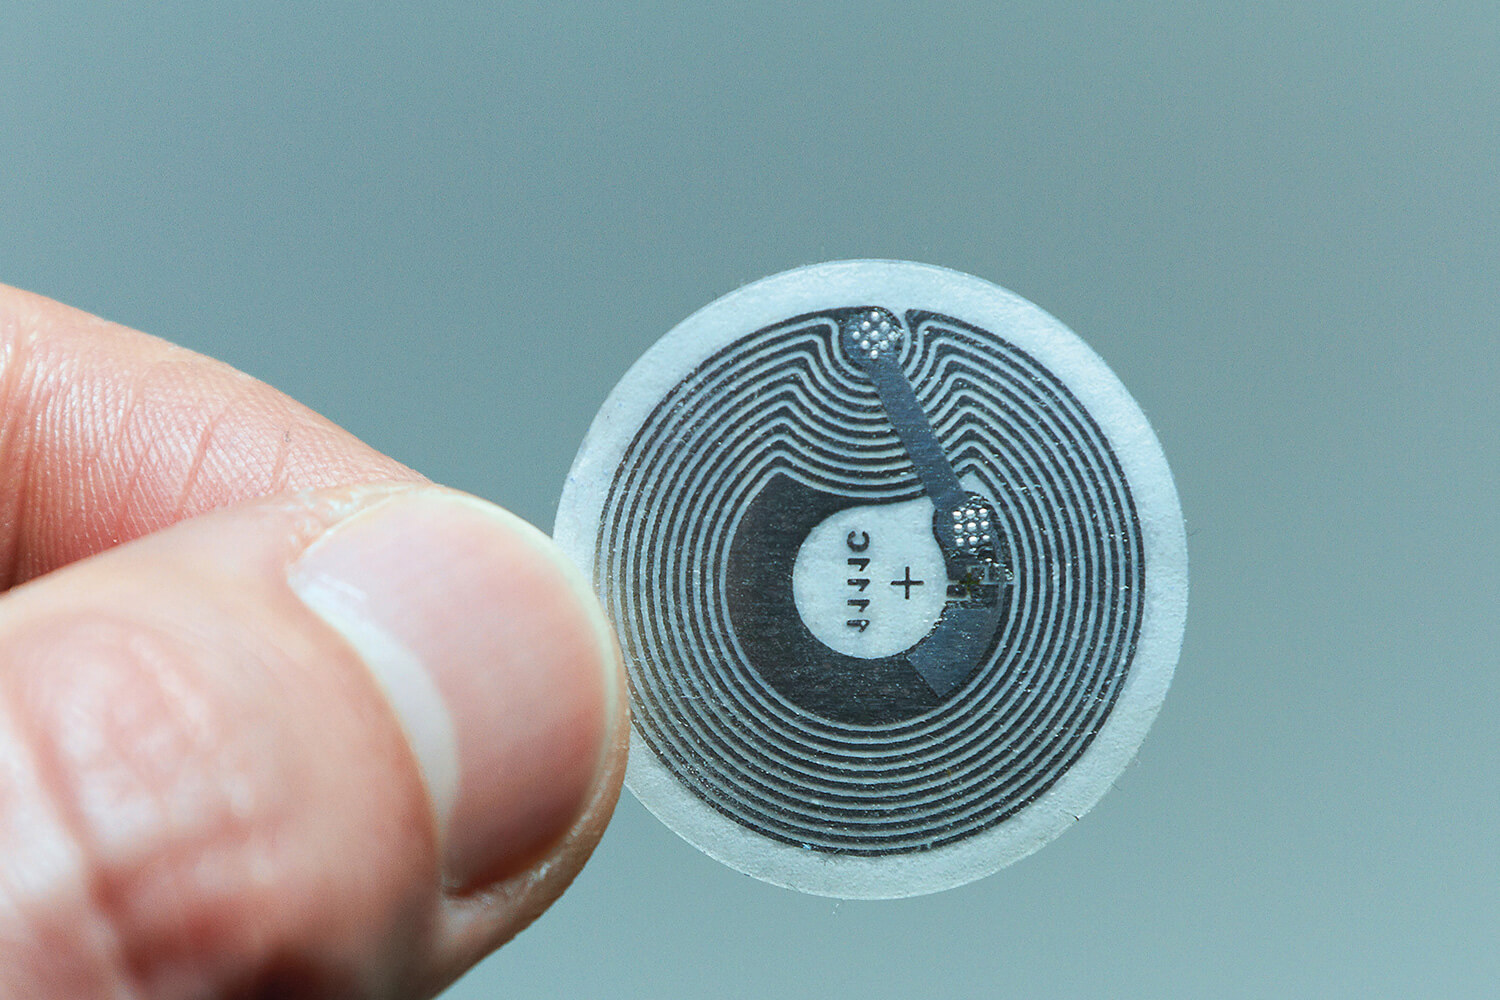 RFID chip vastgehouden tussen duim en wijsvinger